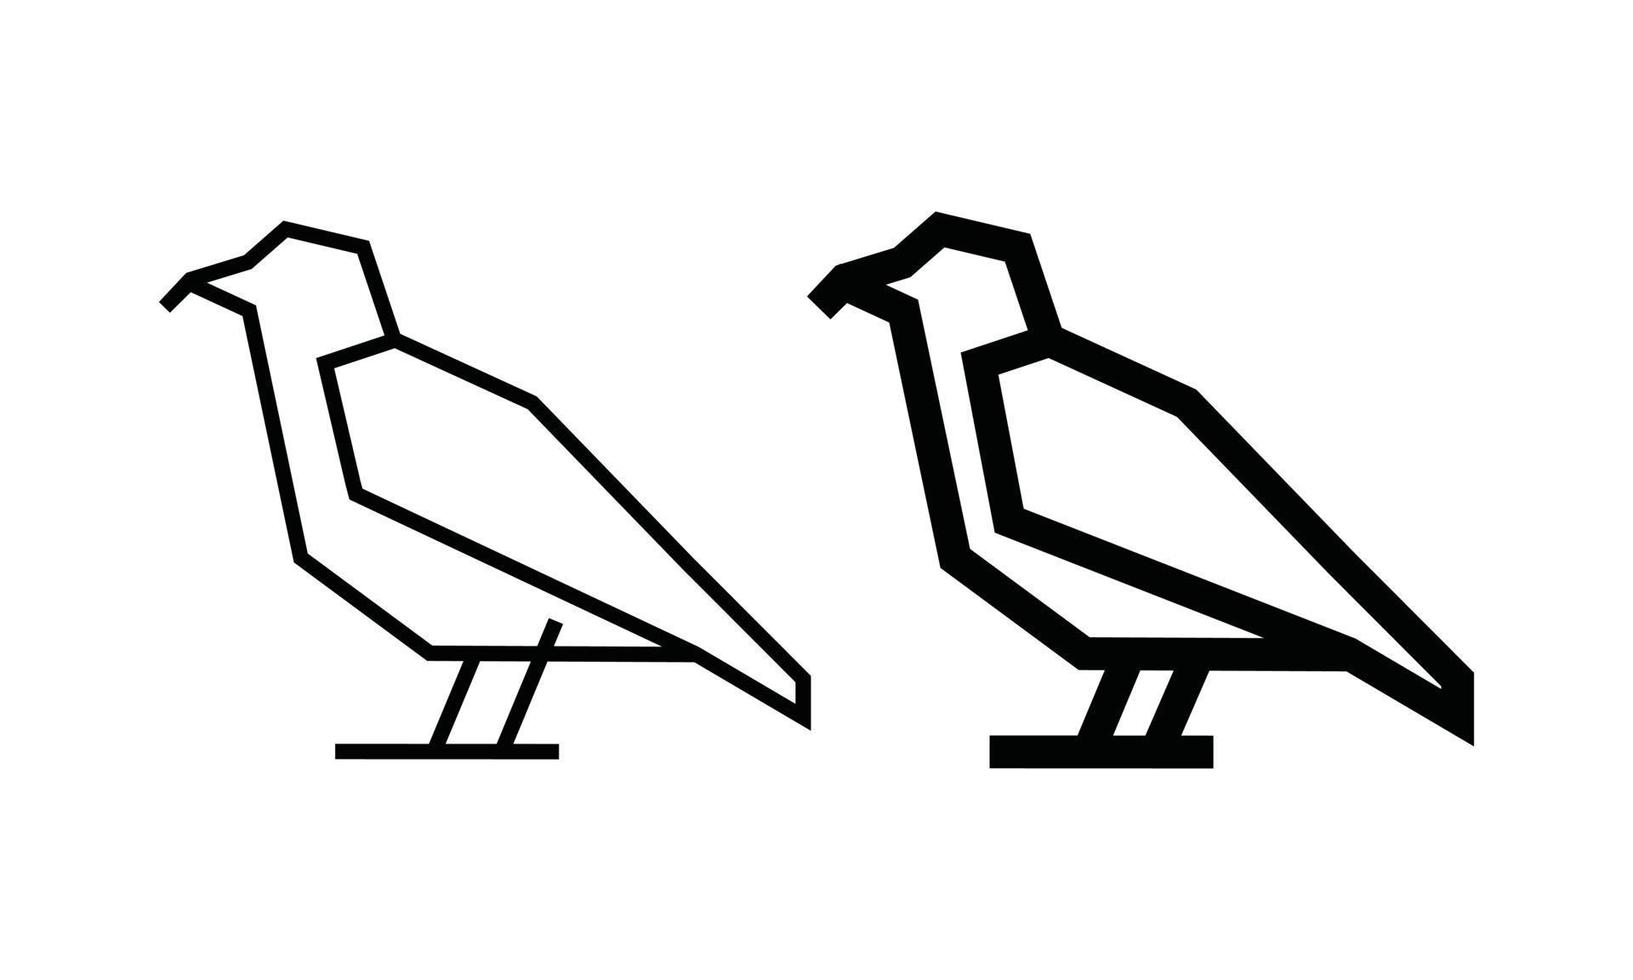 fågel linje konst vektor illustration isolerad på vit bakgrund. minimal konturikon för enkla djurlogotypkoncept.